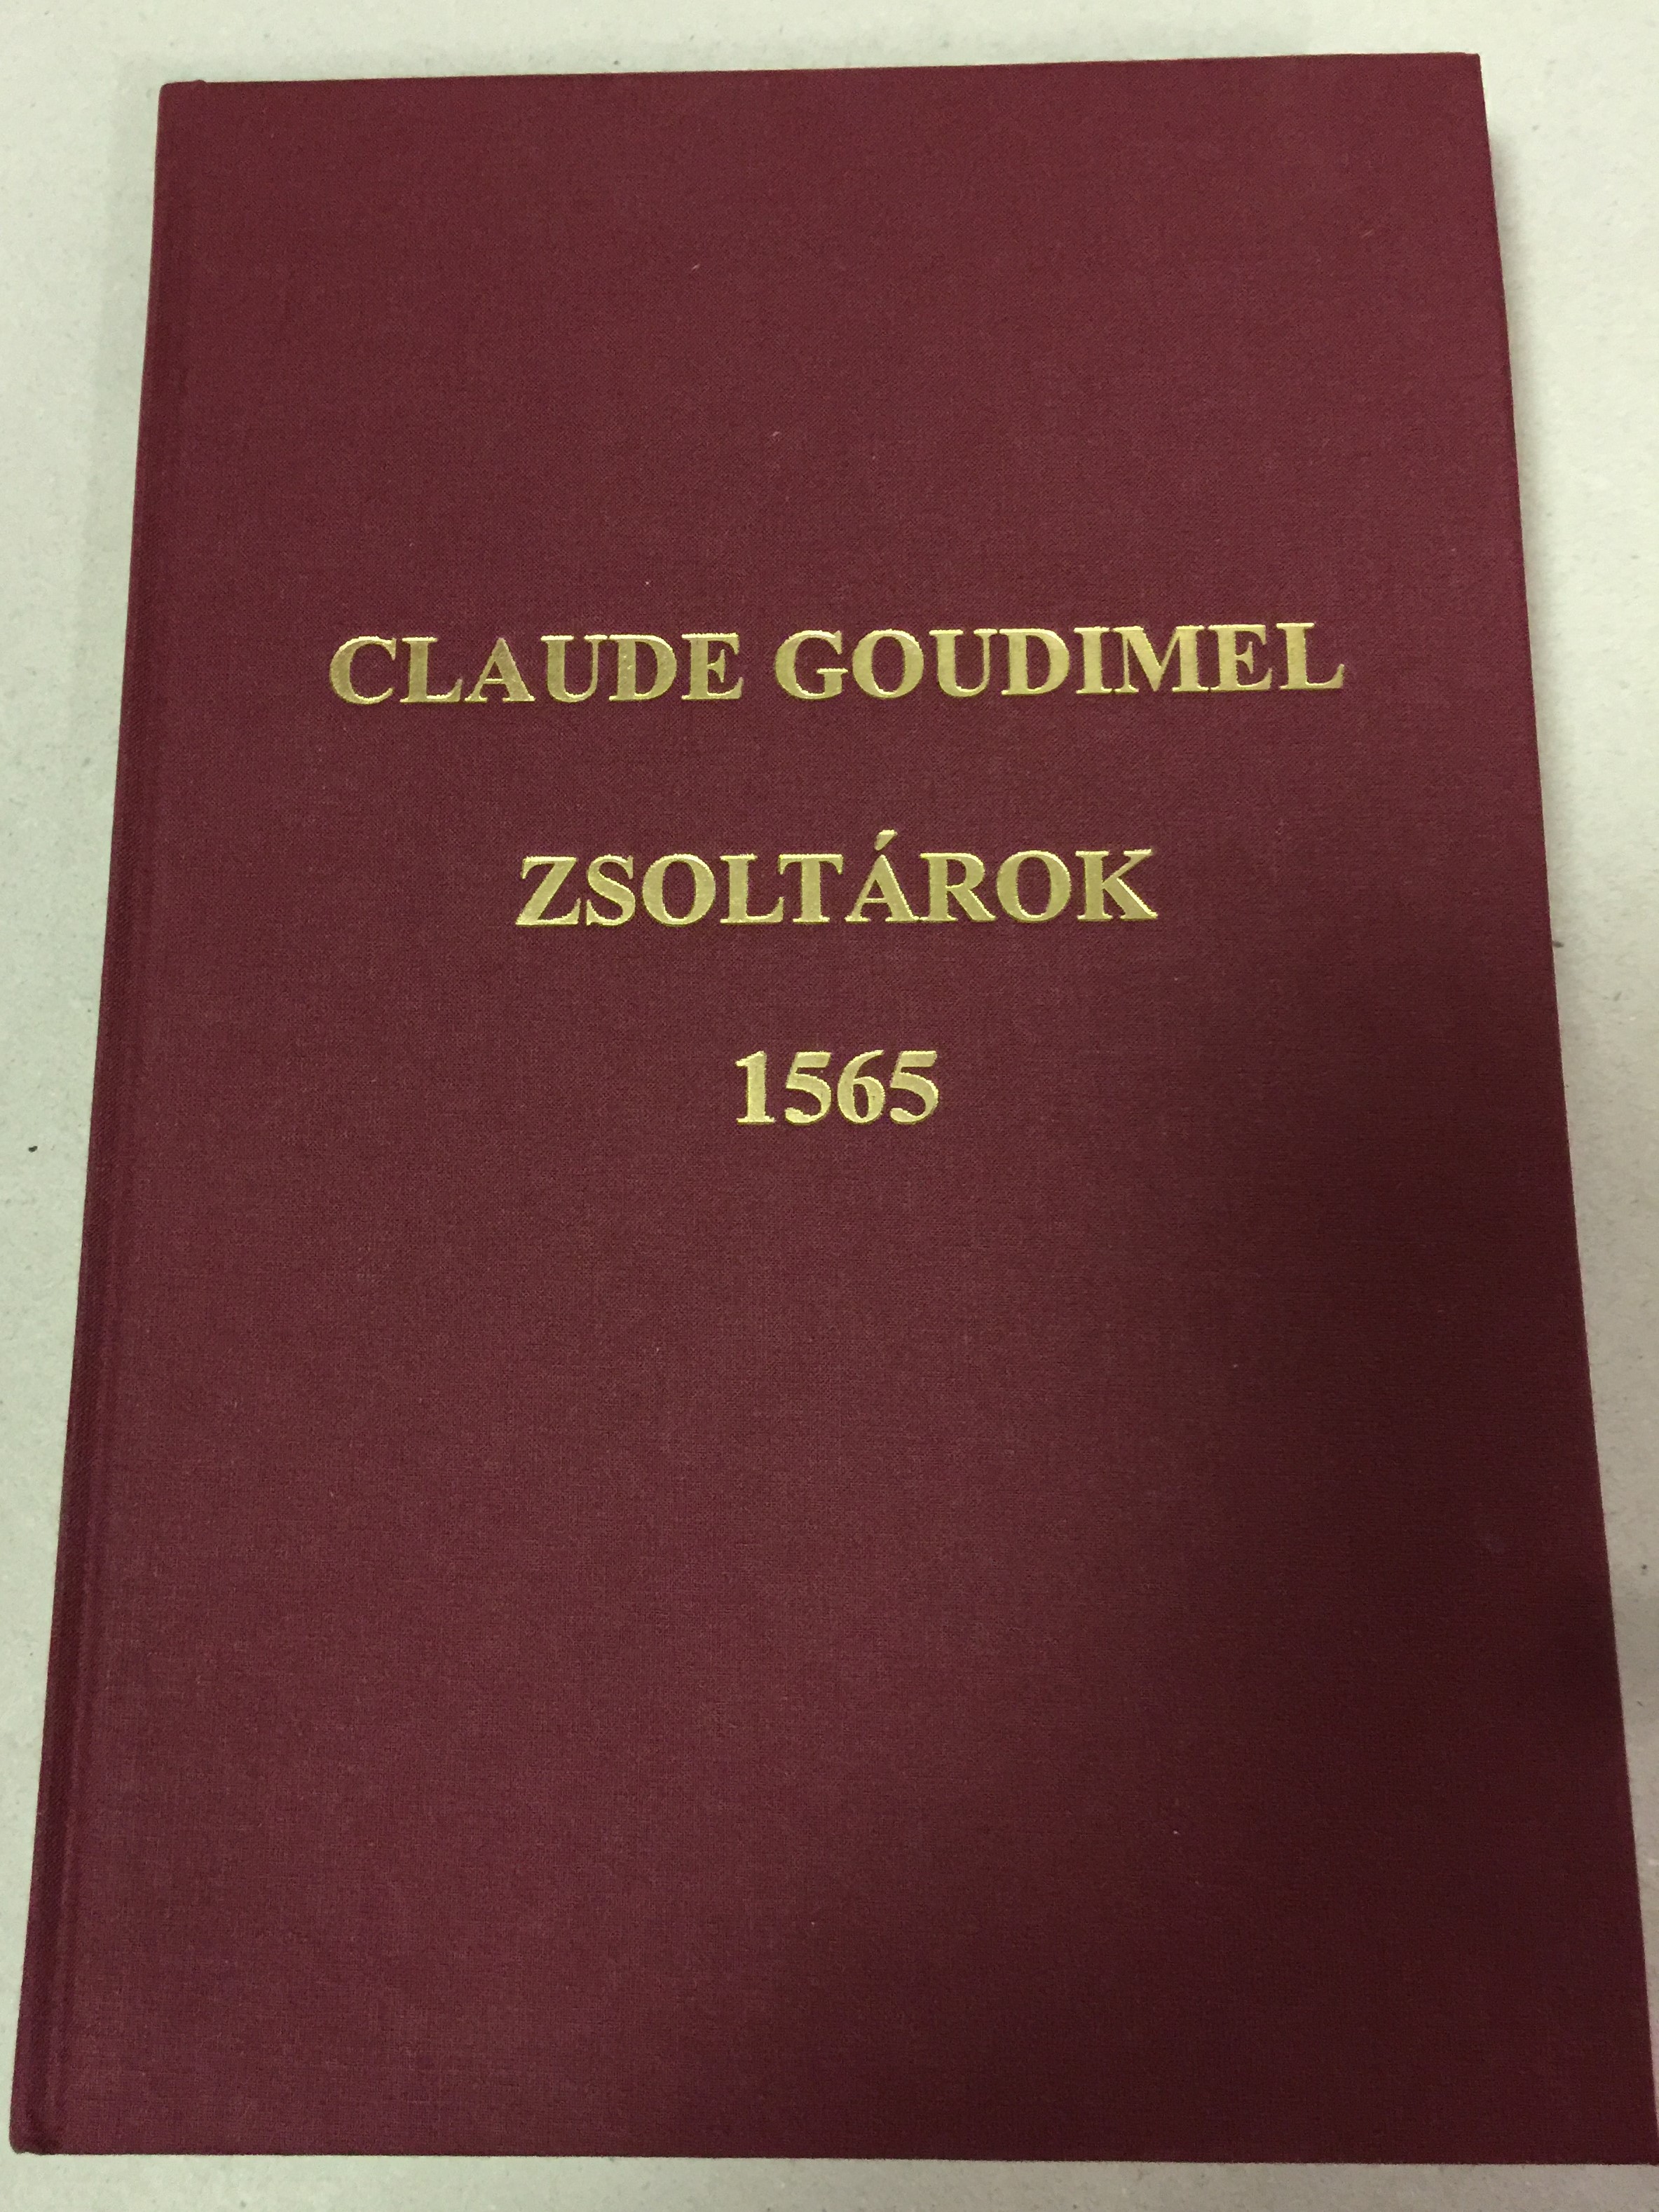 zsolt-rok-1565-by-claude-goudimel-n-gysz-lam-k-rusok-a-genfi-zsolt-rok-dallamaira-1.jpg